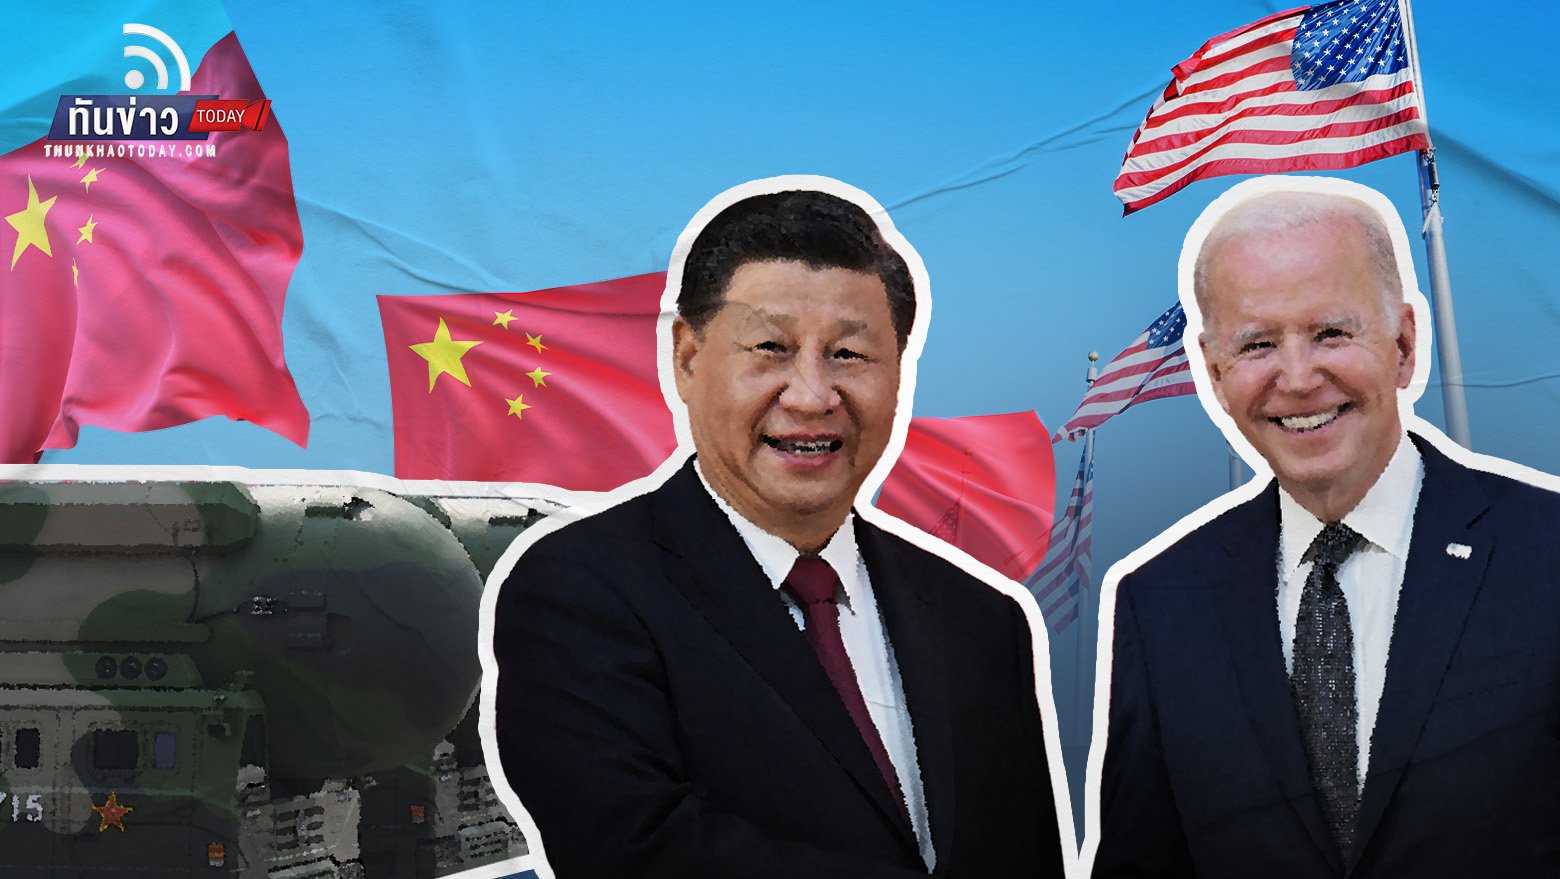 จีนตกลงเจรจาควบคุมอาวุธนิวเคลียร์กับสหรัฐฯ ในสัปดาห์หน้า